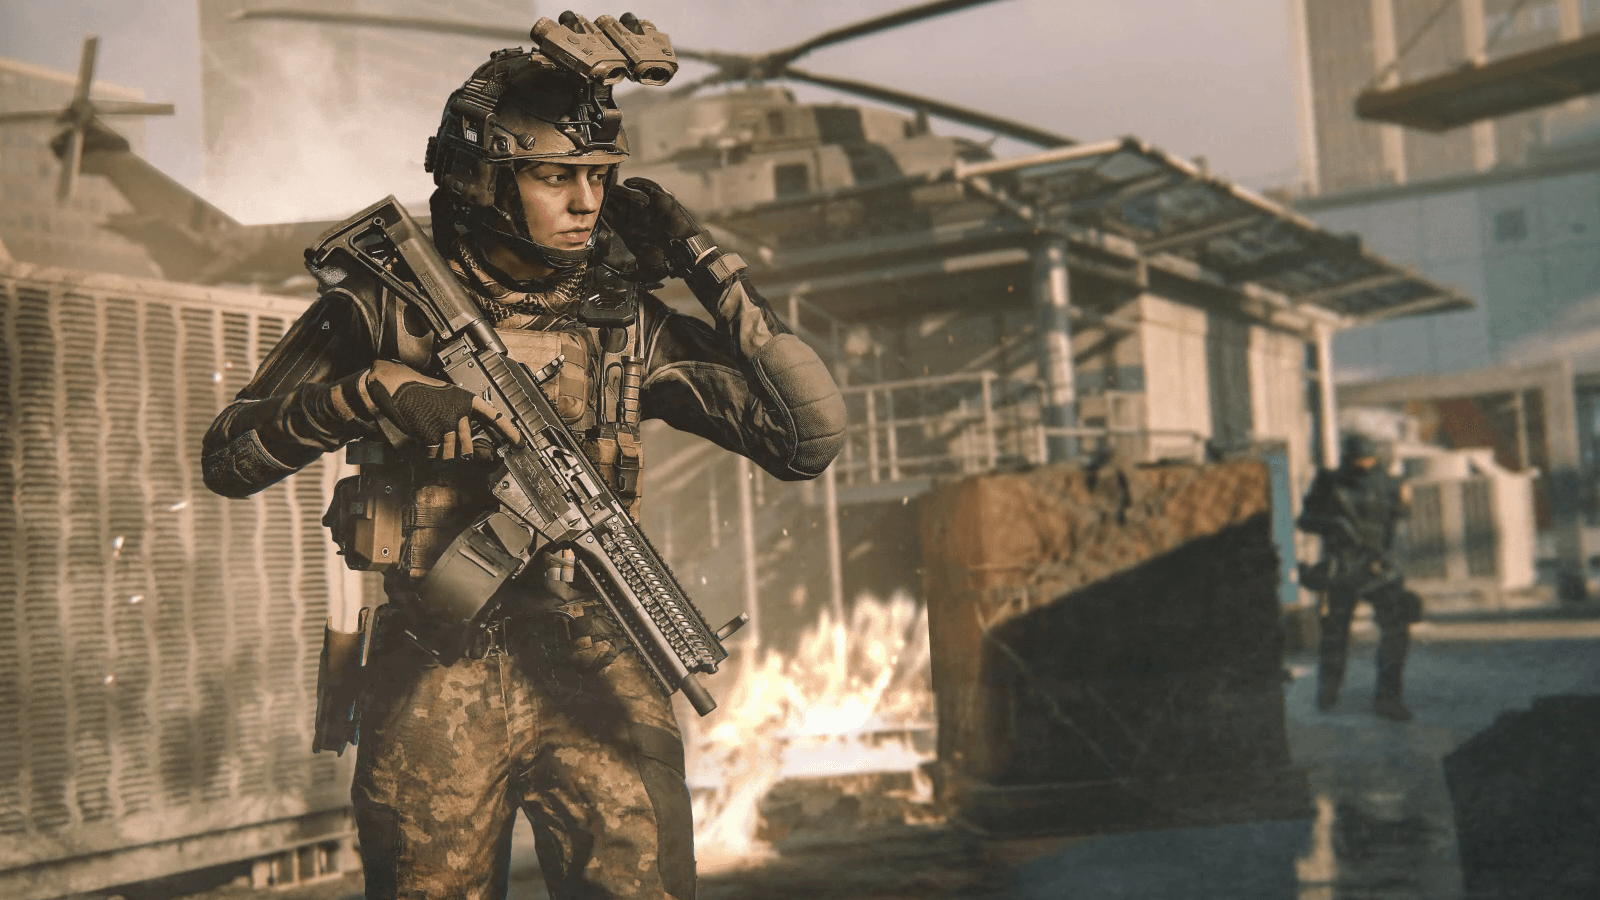 Gracze Modern Warfare 3 krytykują jakość grafiki z 2009 roku